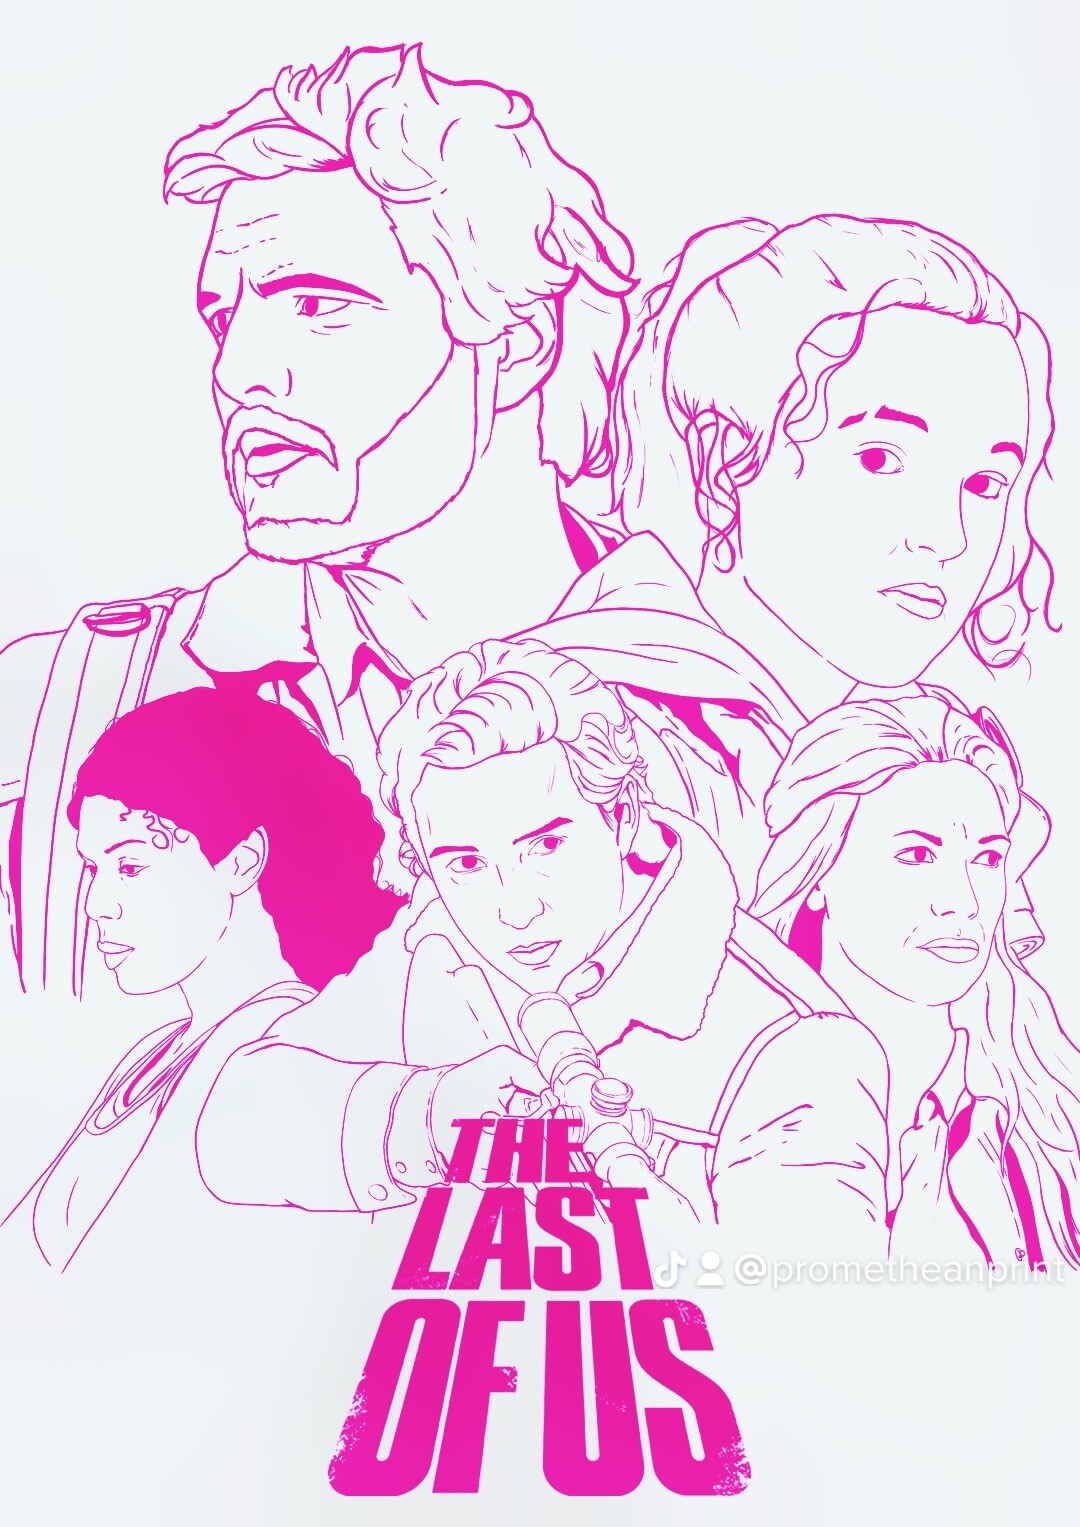 The Last of Us on HBO fanart by Hacheke on DeviantArt